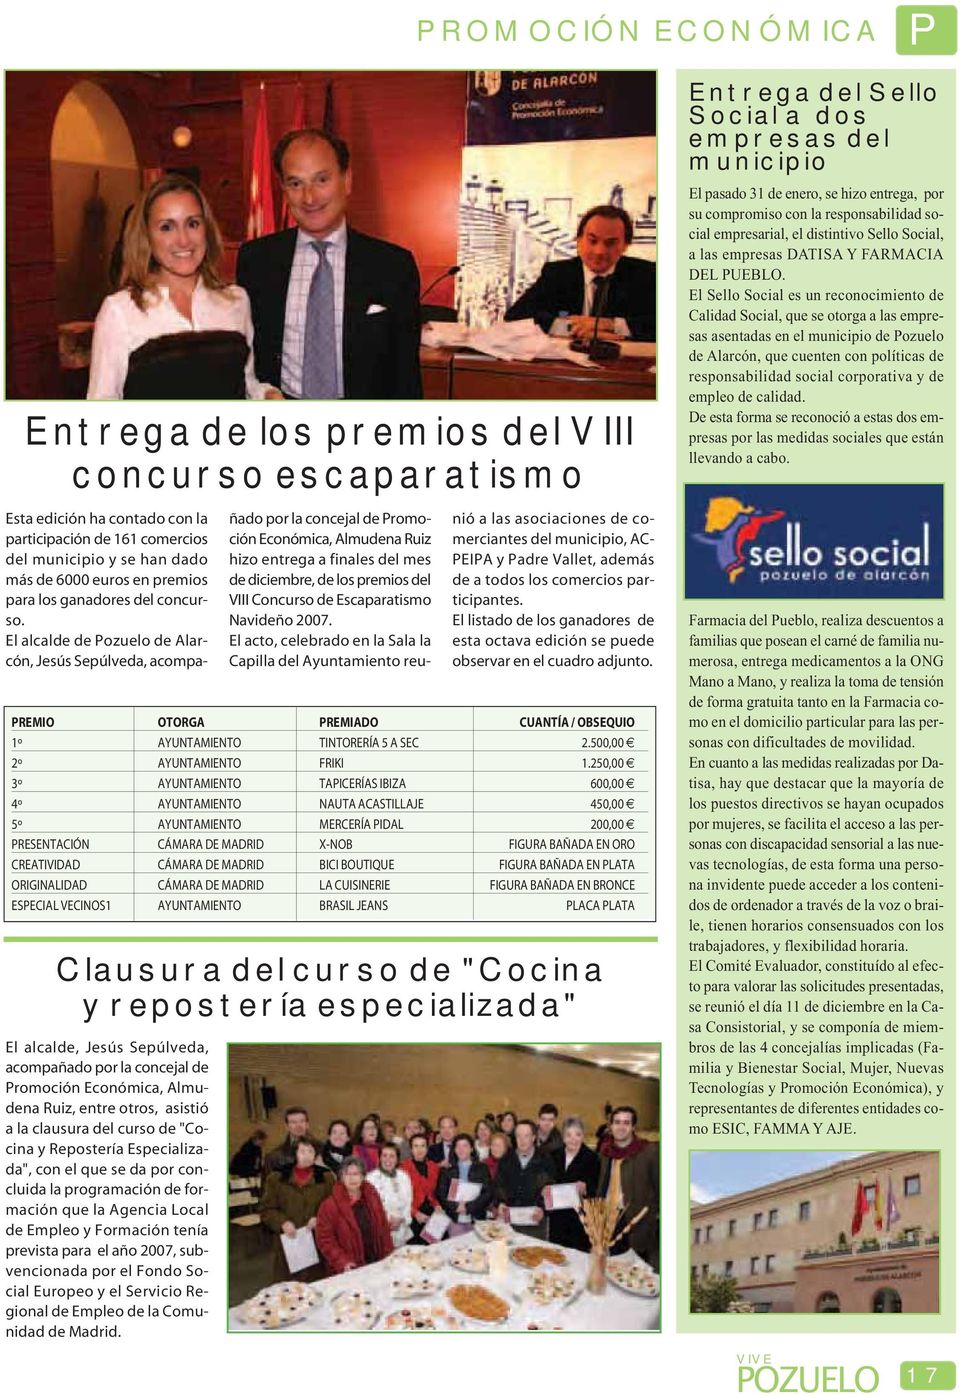 El alcalde de Pozuelo de Alarcón, Jesús Sepúlveda, acompañado por la concejal de Promoción Económica, Almudena Ruiz hizo entrega a finales del mes de diciembre, de los premios del VIII Concurso de